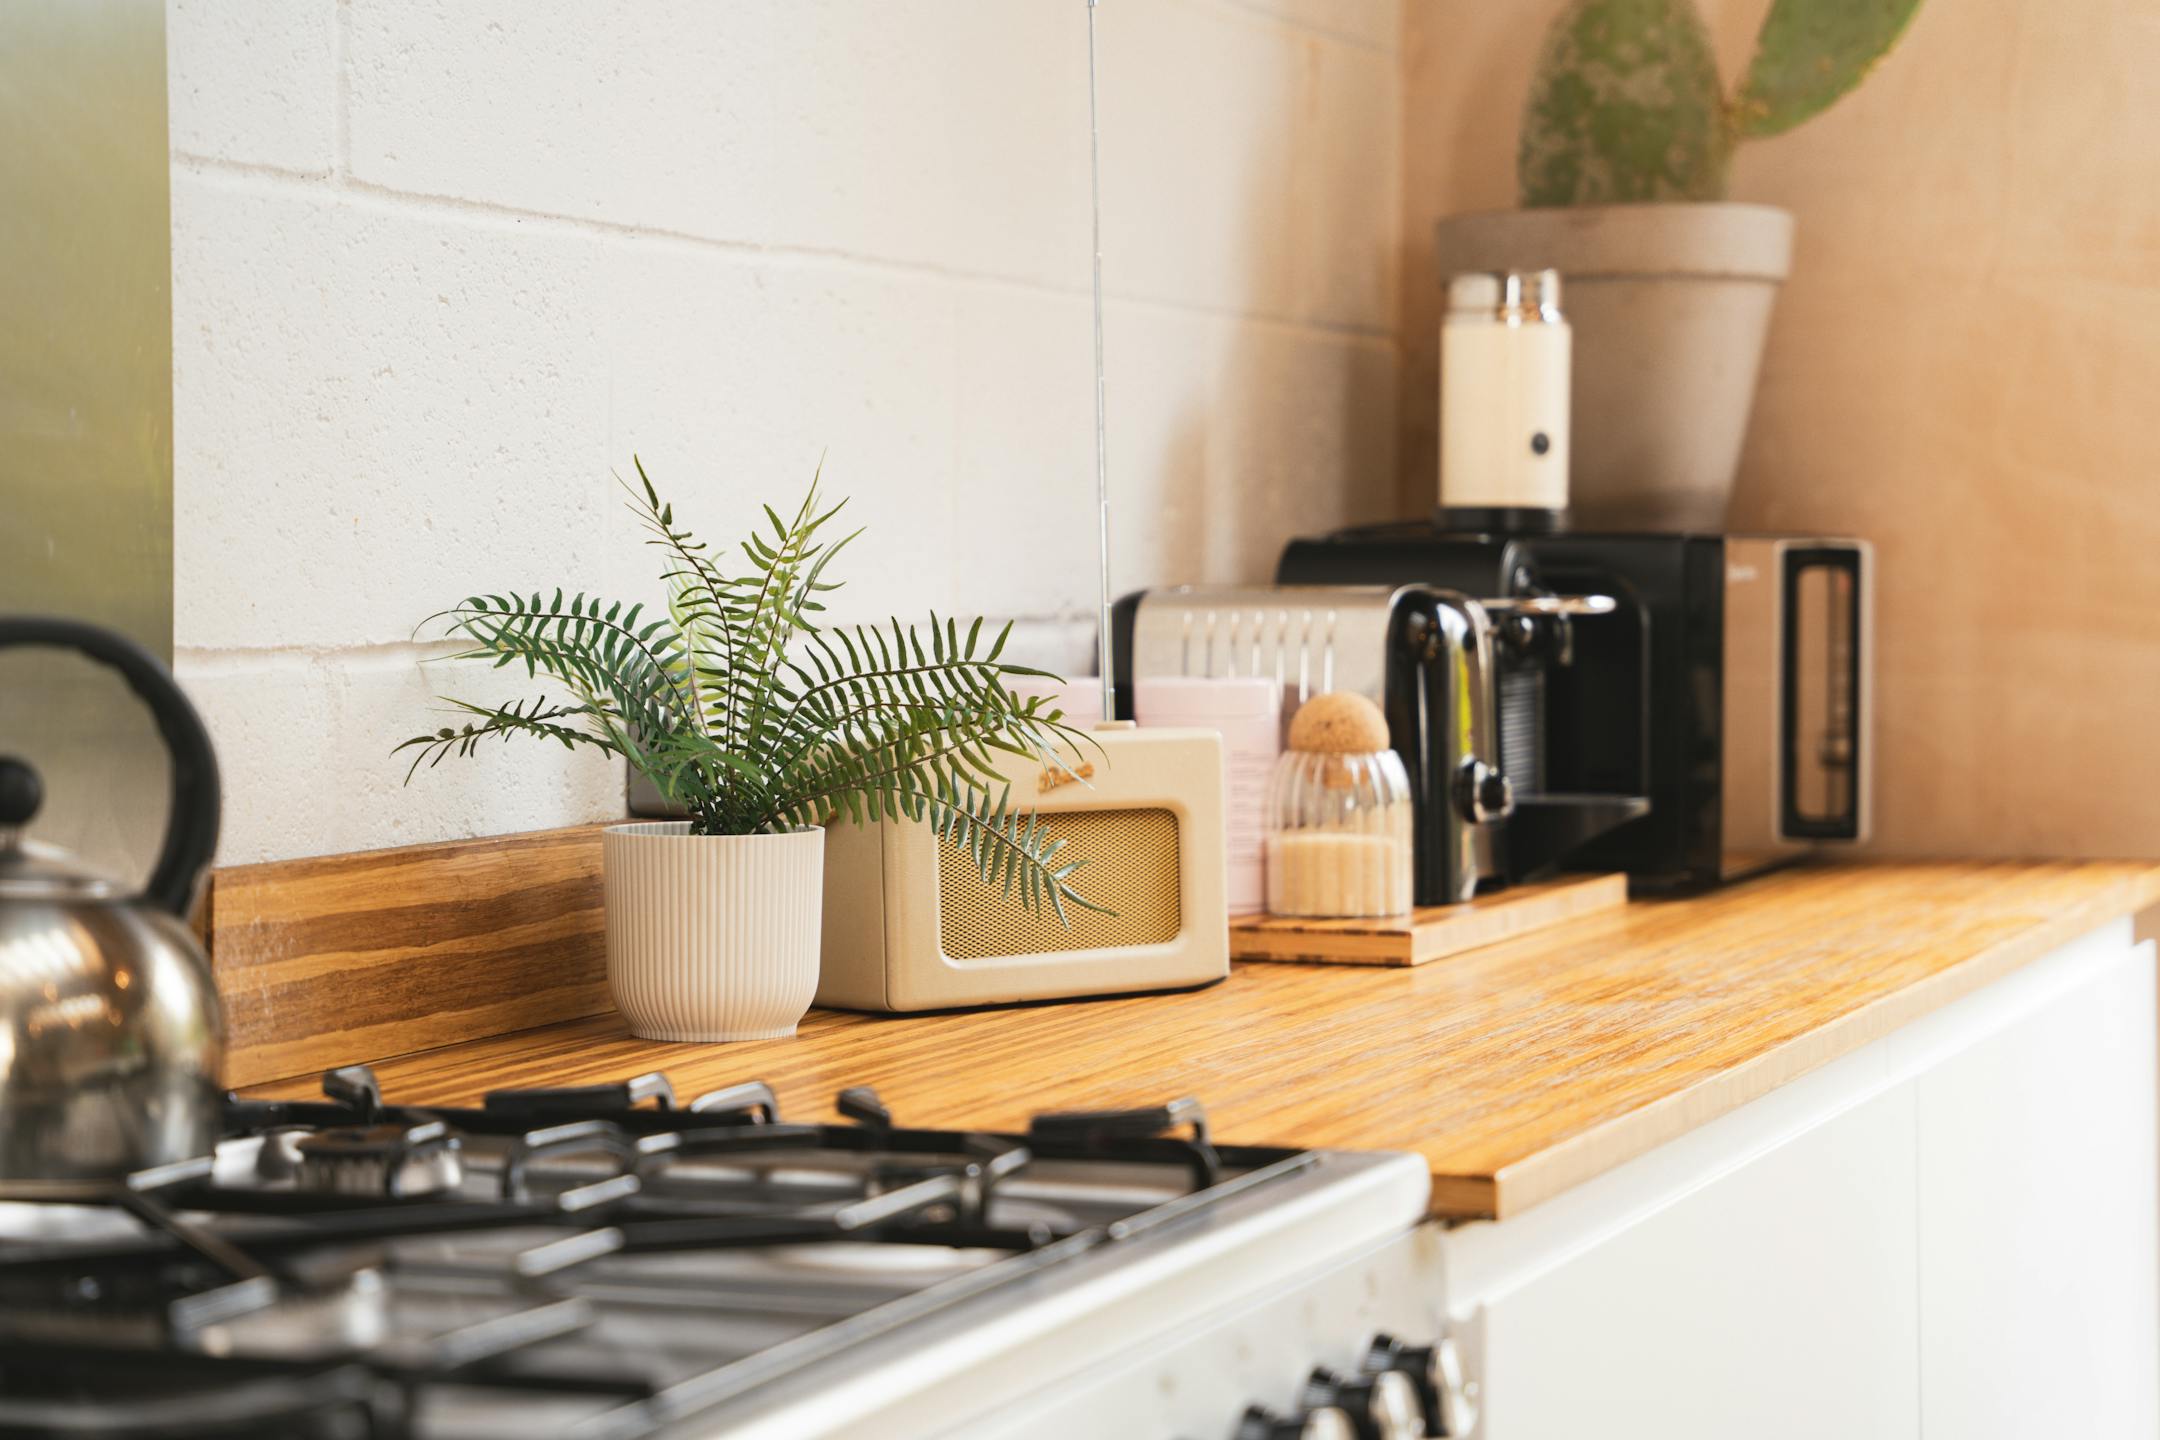 Artificial blechnum fern on kitchen worktop in white pot